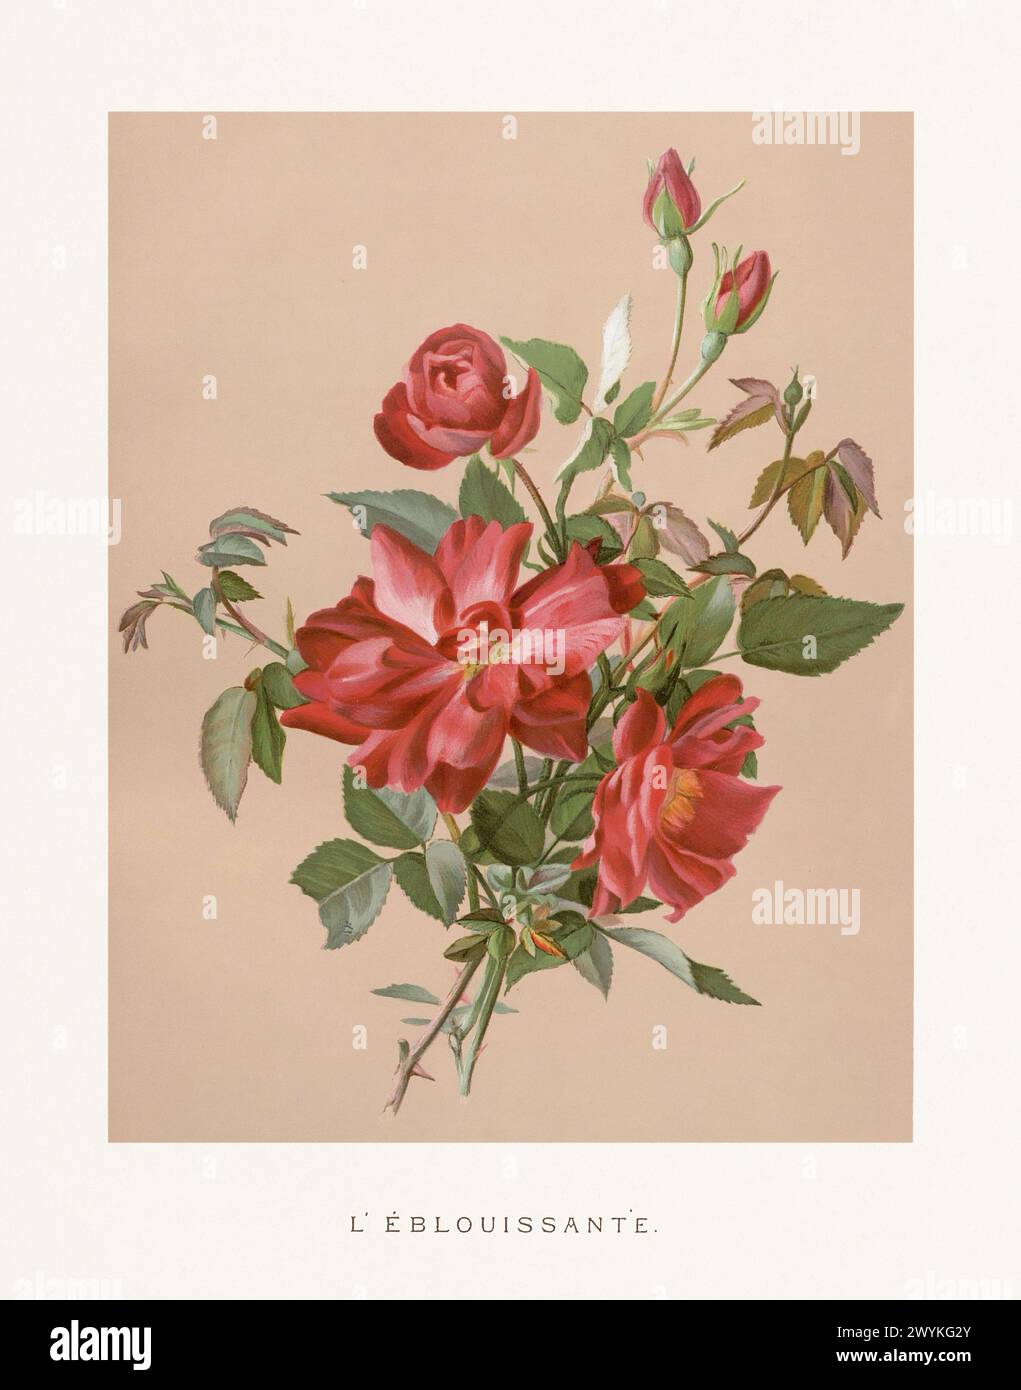 Illustrazione vintage Rose. Squisita illustrazione ad acquerello del XIX secolo di rose su un morbido sfondo beige. Accattivanti opere d'arte vintage, circa 1880 Foto Stock